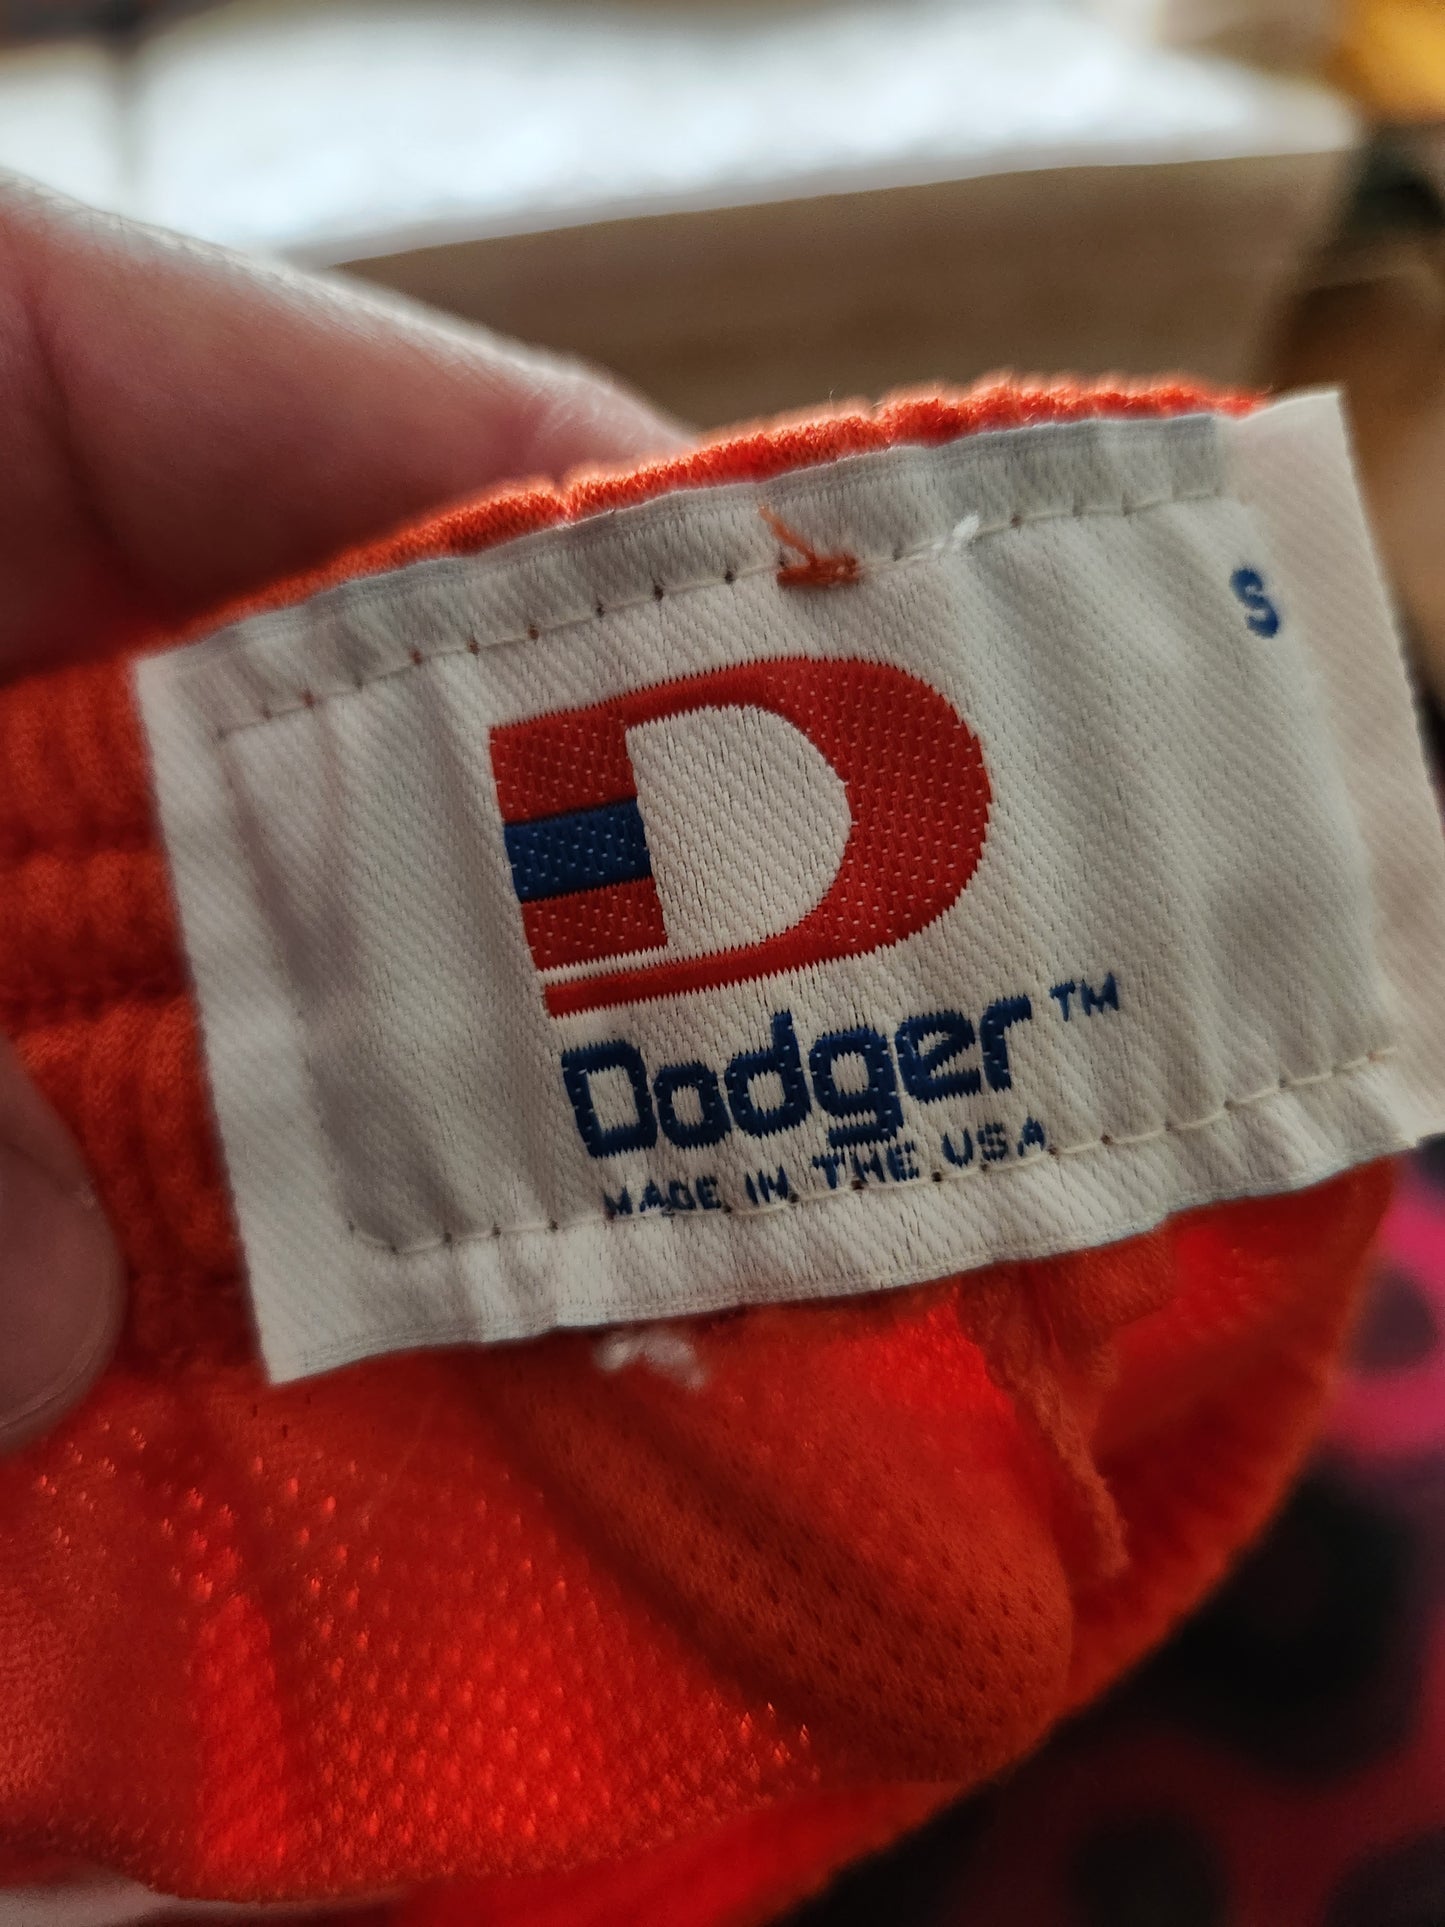 Vintage Orange Sport Shorts by Dodger